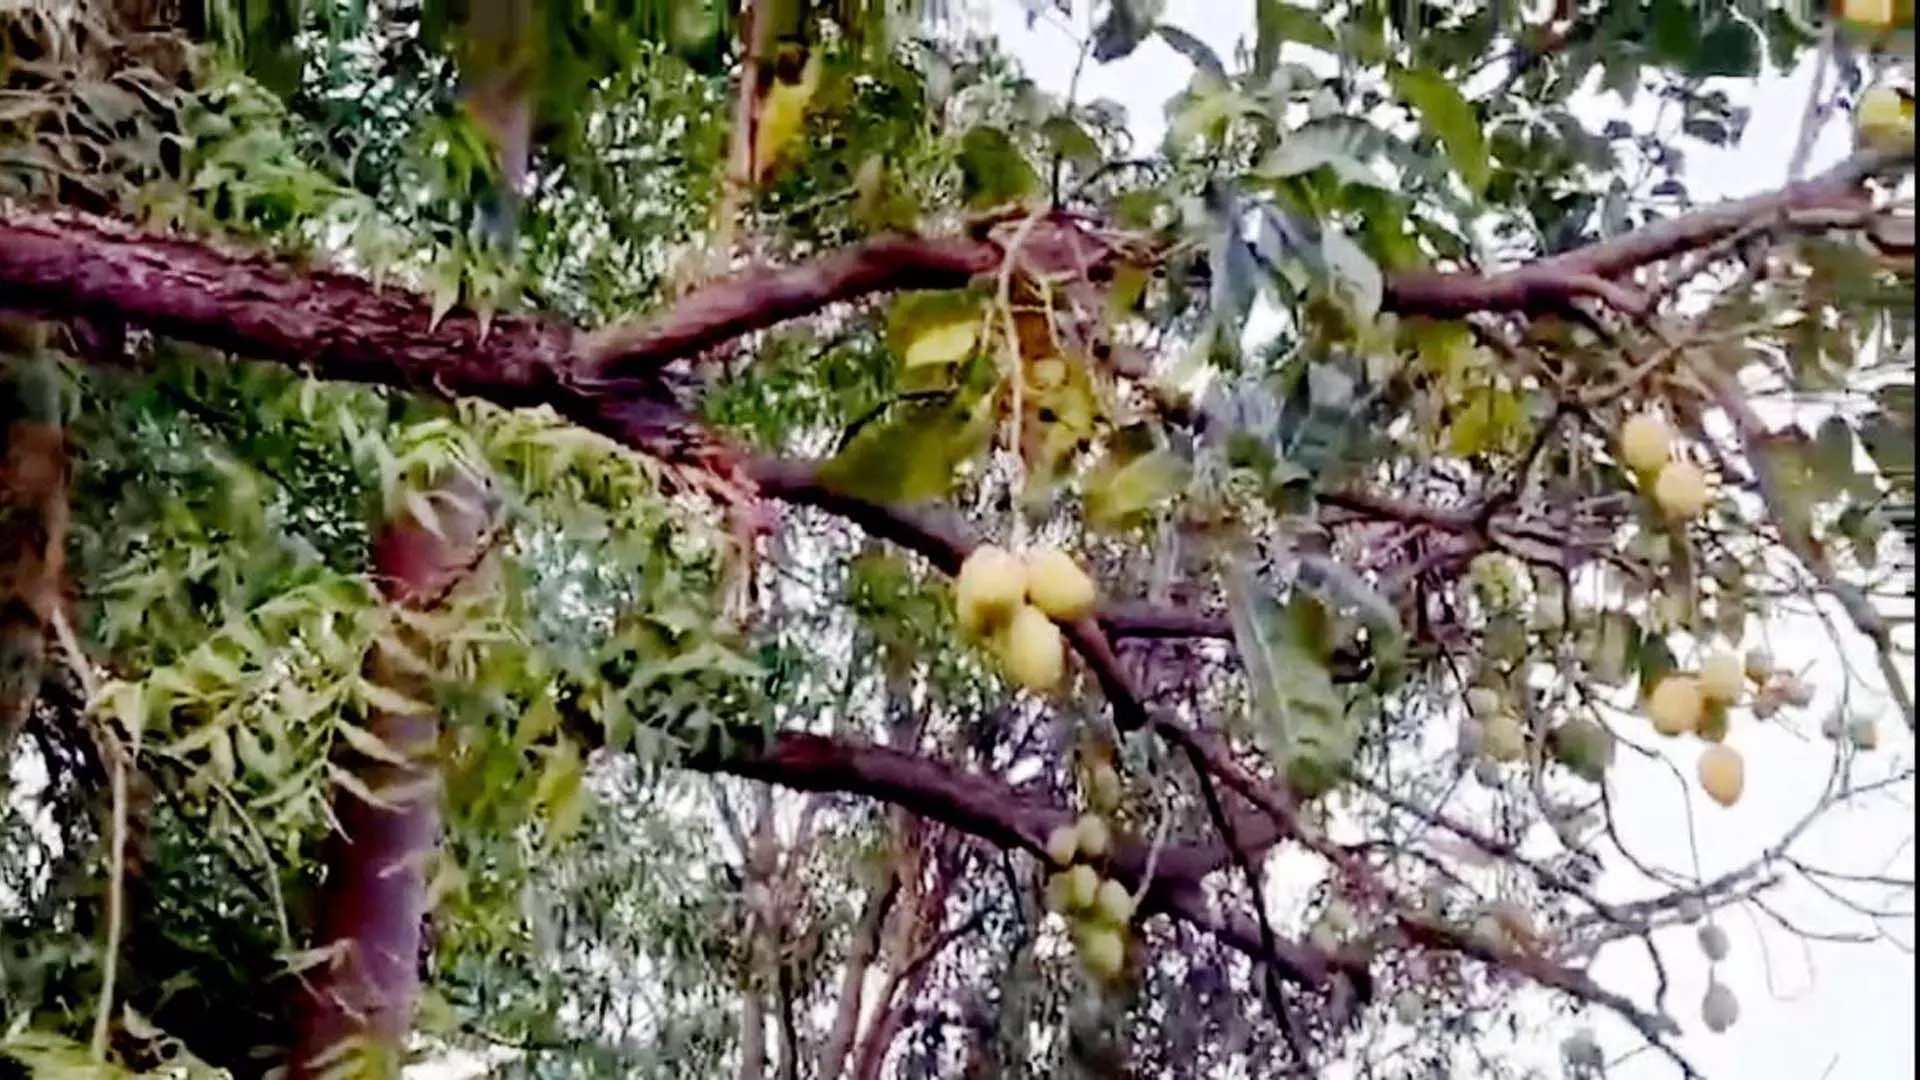 मंत्री के बंगले का प्राकृतिक चमत्कार, नीम के पेड़ पर लटके रसीले आम के फल